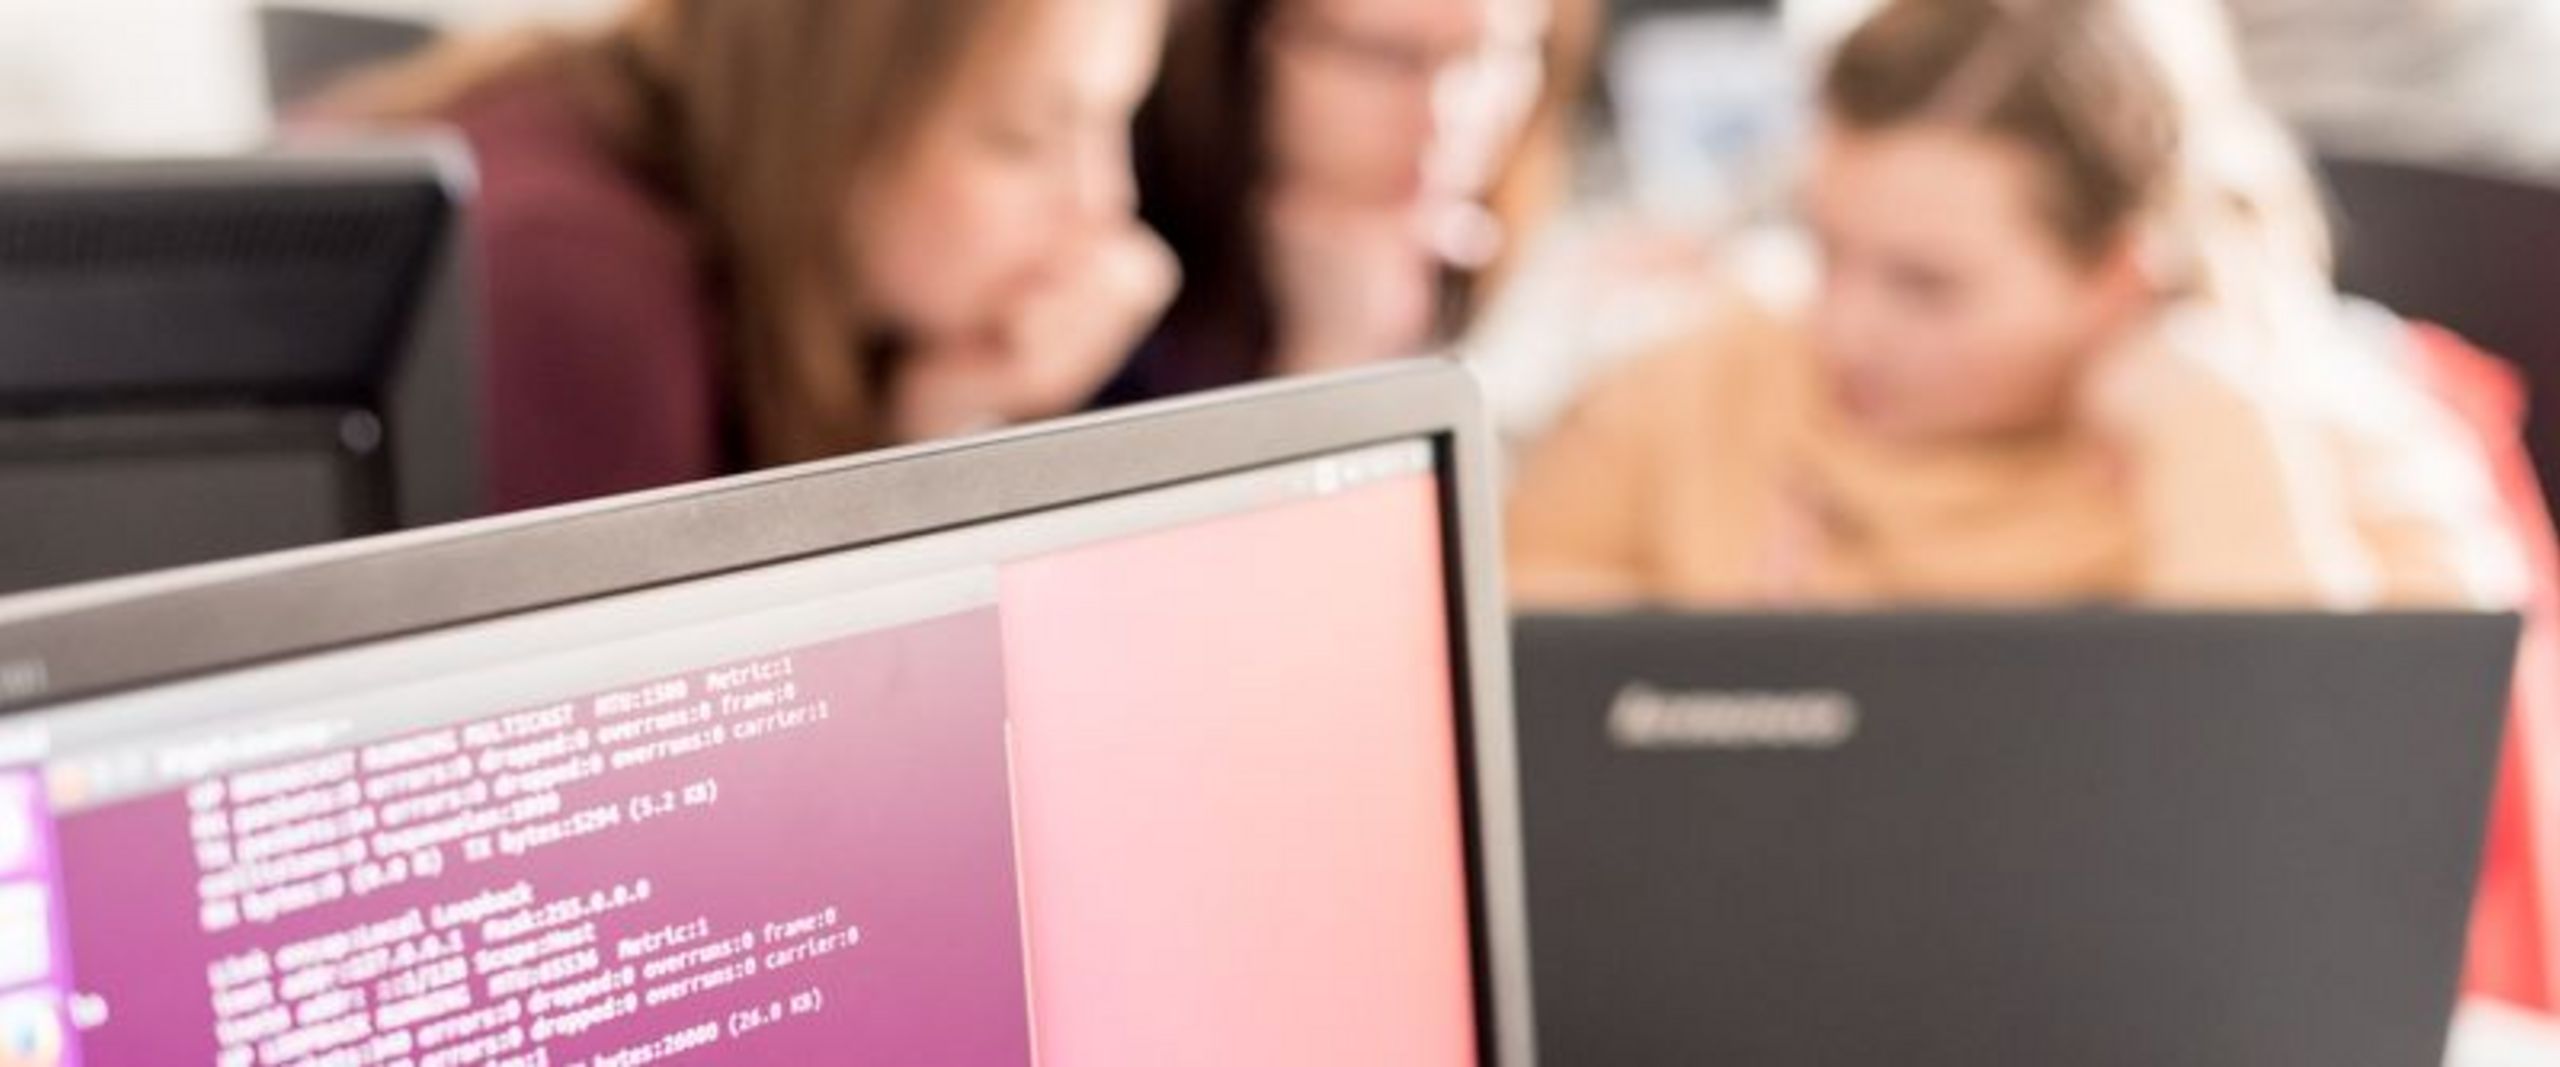 Bildschirm mit Codezeilen im Vordergrund, dahinter unscharf drei Studentinnen, die an einem Laptop sitzen und programmieren.